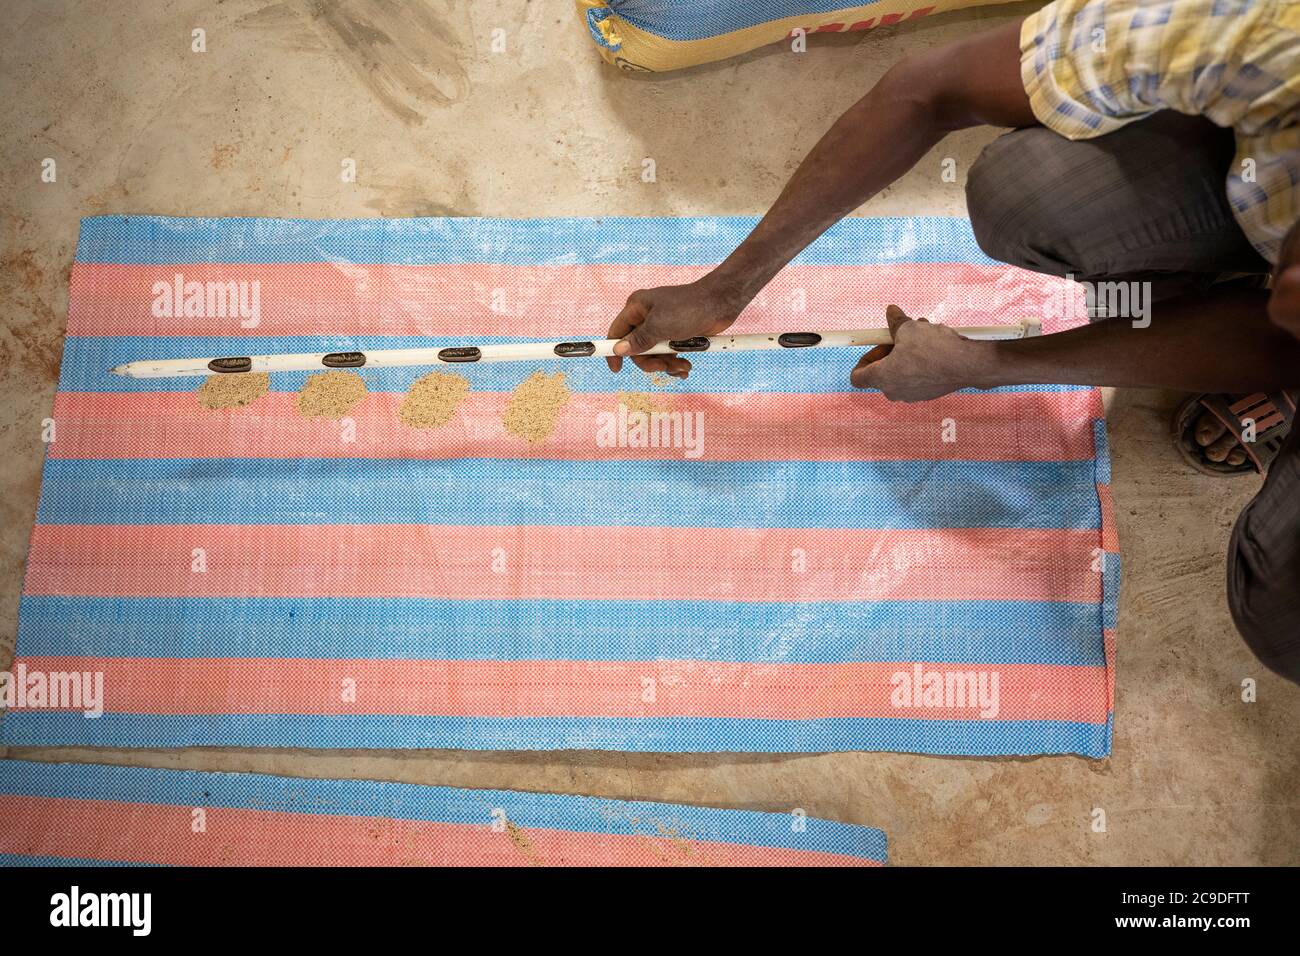 L'uso di un'asta di campionamento consente agli addetti al magazzino di campionare la qualità del sesamo in un sacco di tela di sacco in tutta la busta senza aprirlo. Regione di Boucle de Mouhoun, Burkina Faso, Africa occidentale. Foto Stock